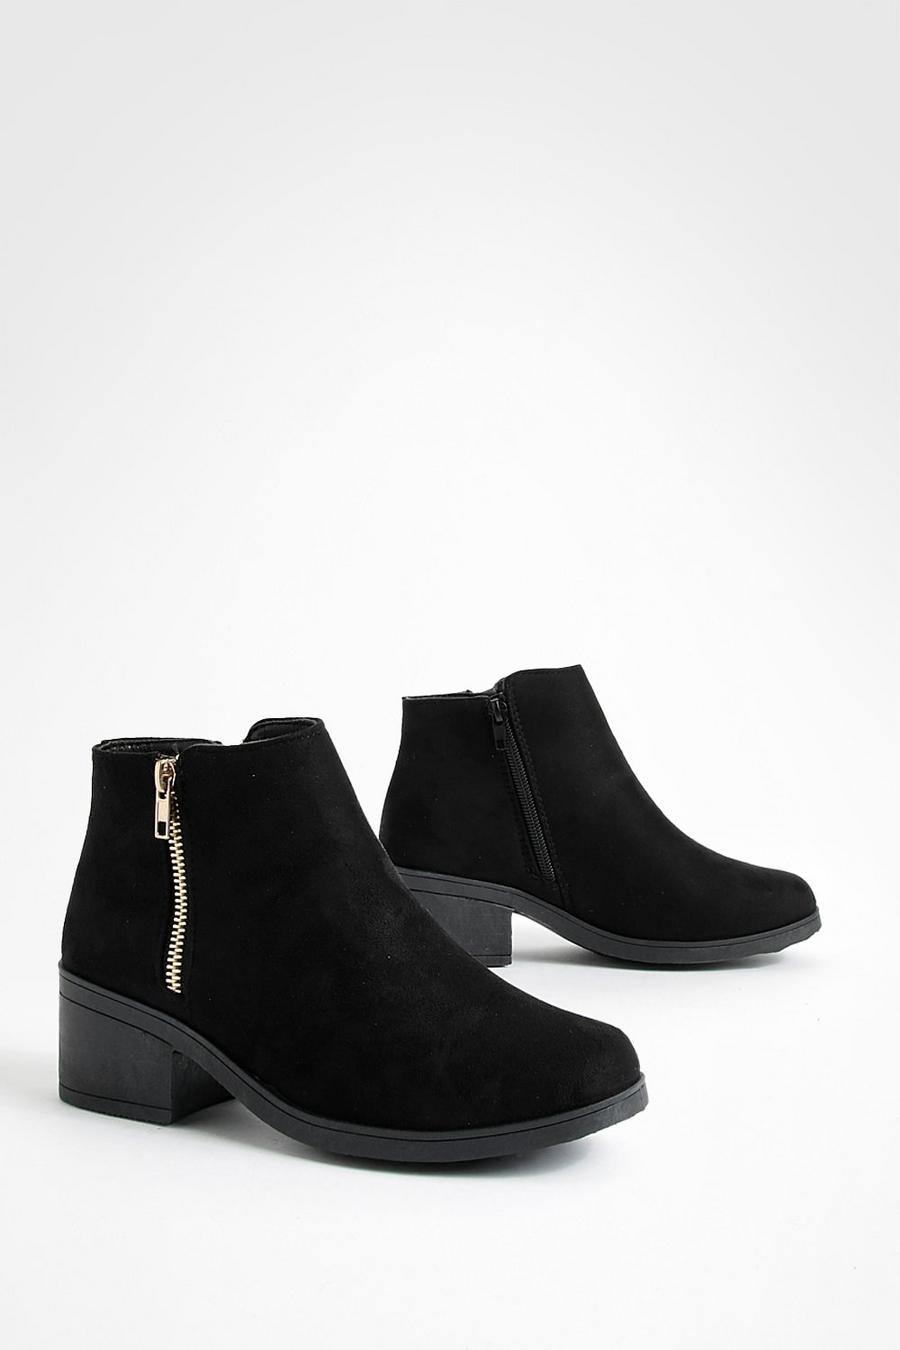 Chelsea-Stiefel mit Blockabsatz und Reißverschluss, Schwarz black